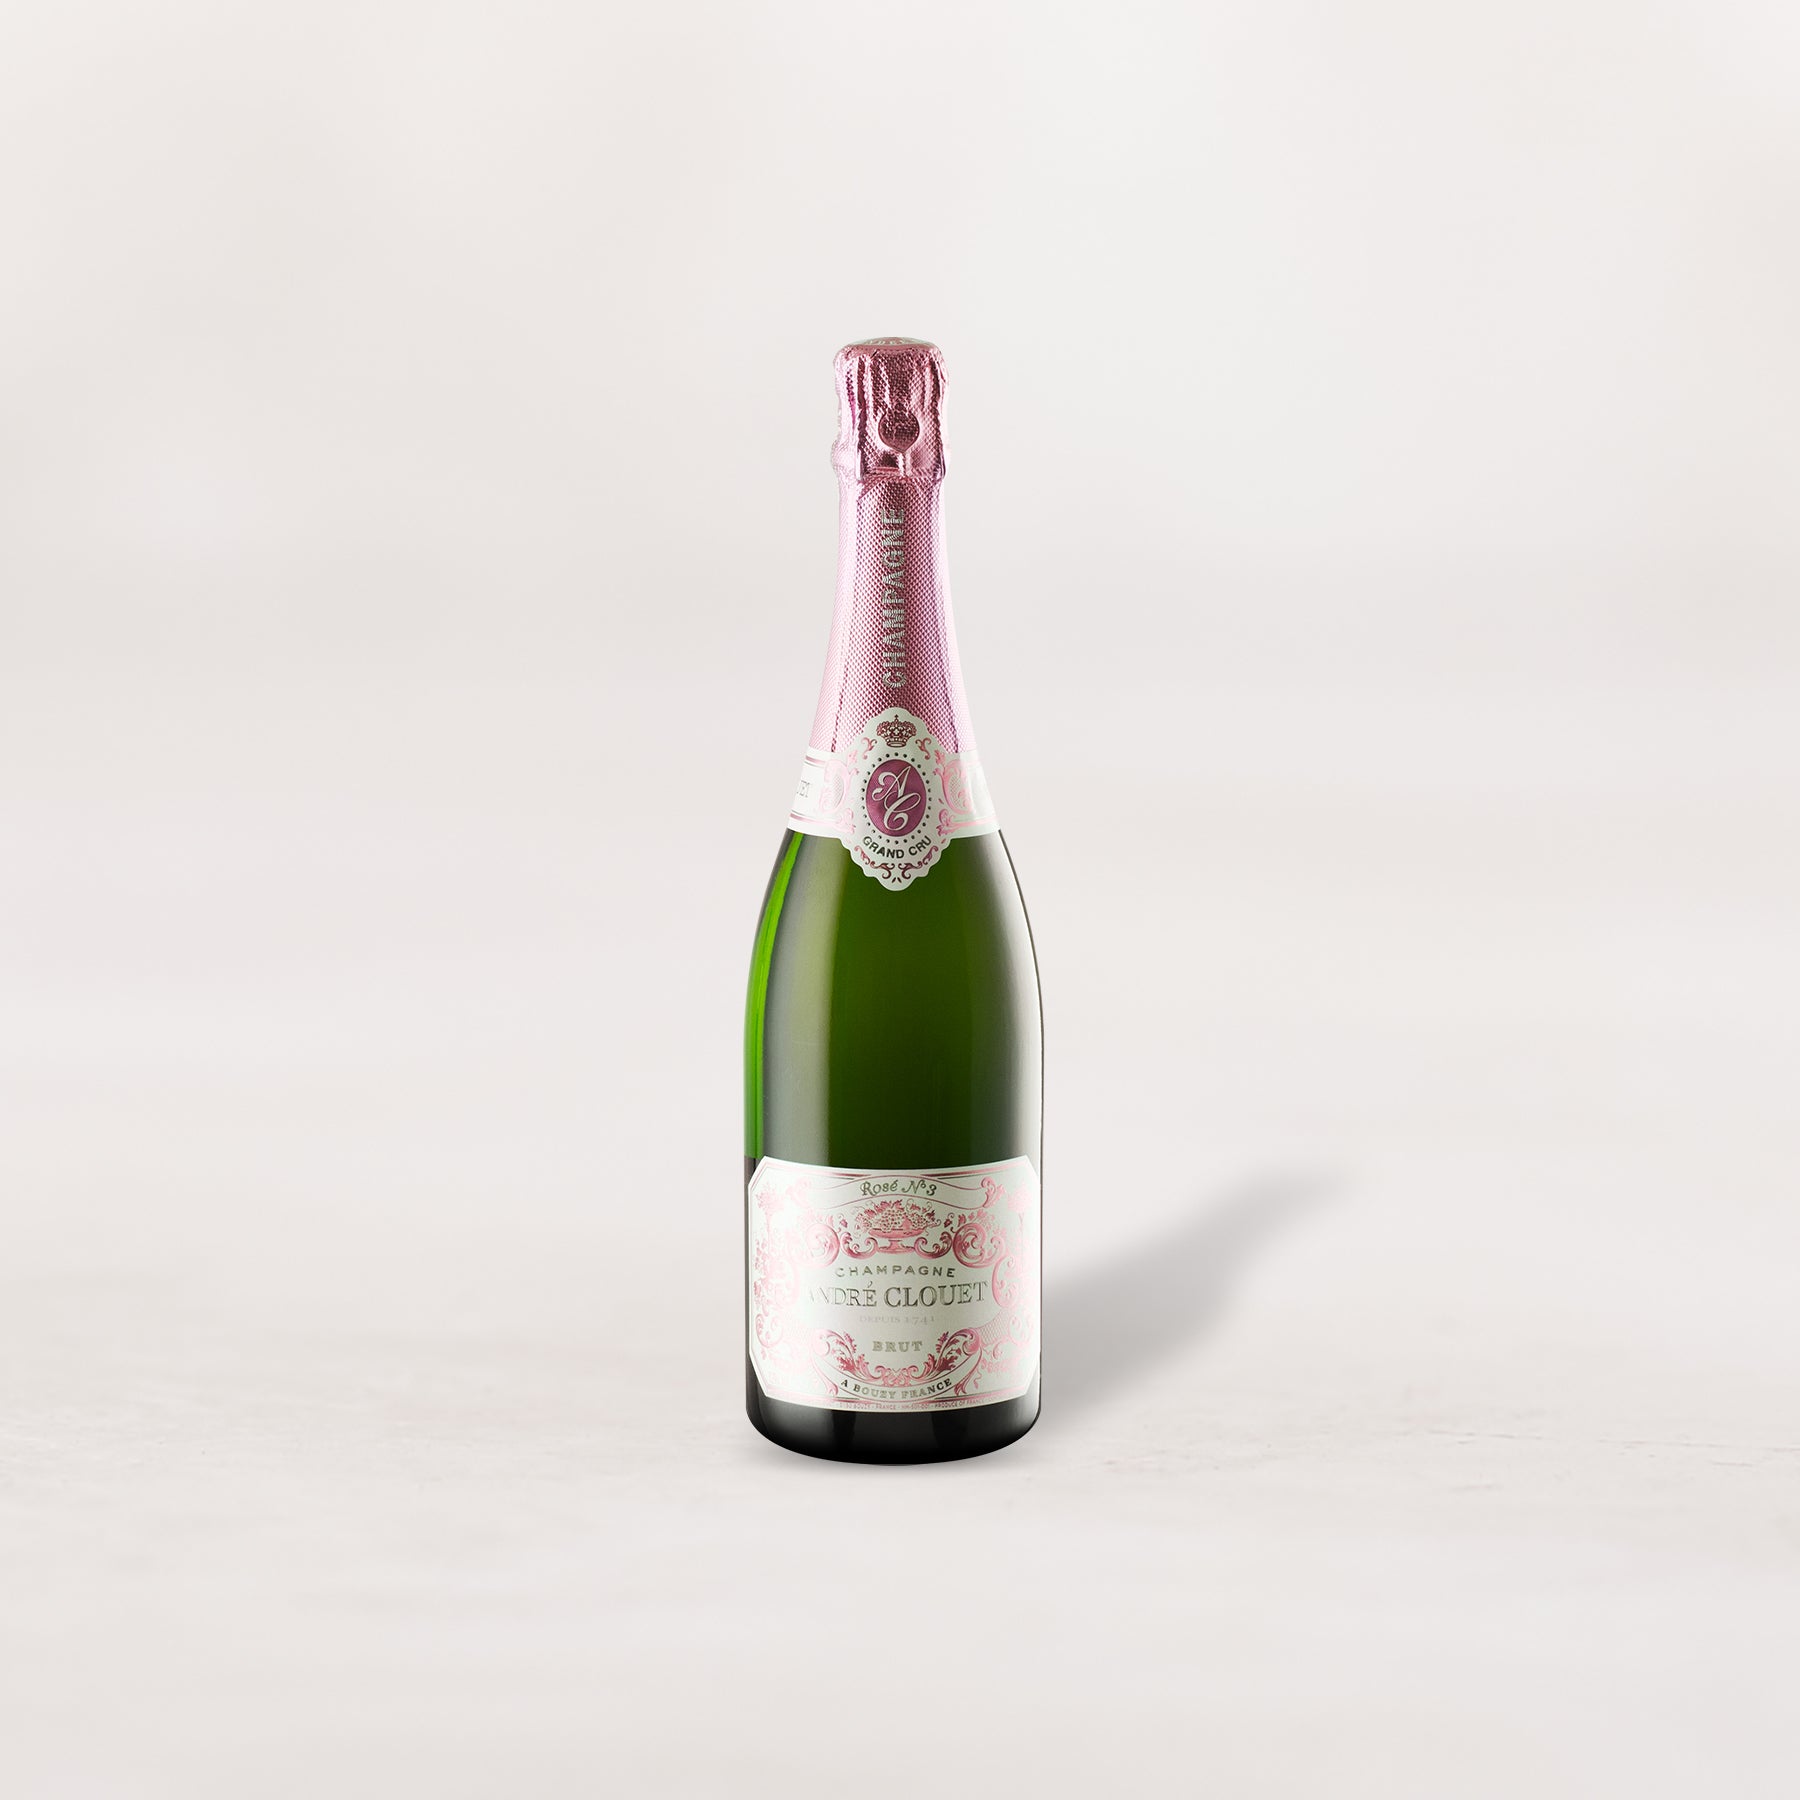 André Clouet, Champagne Brut Rosé “No.3”